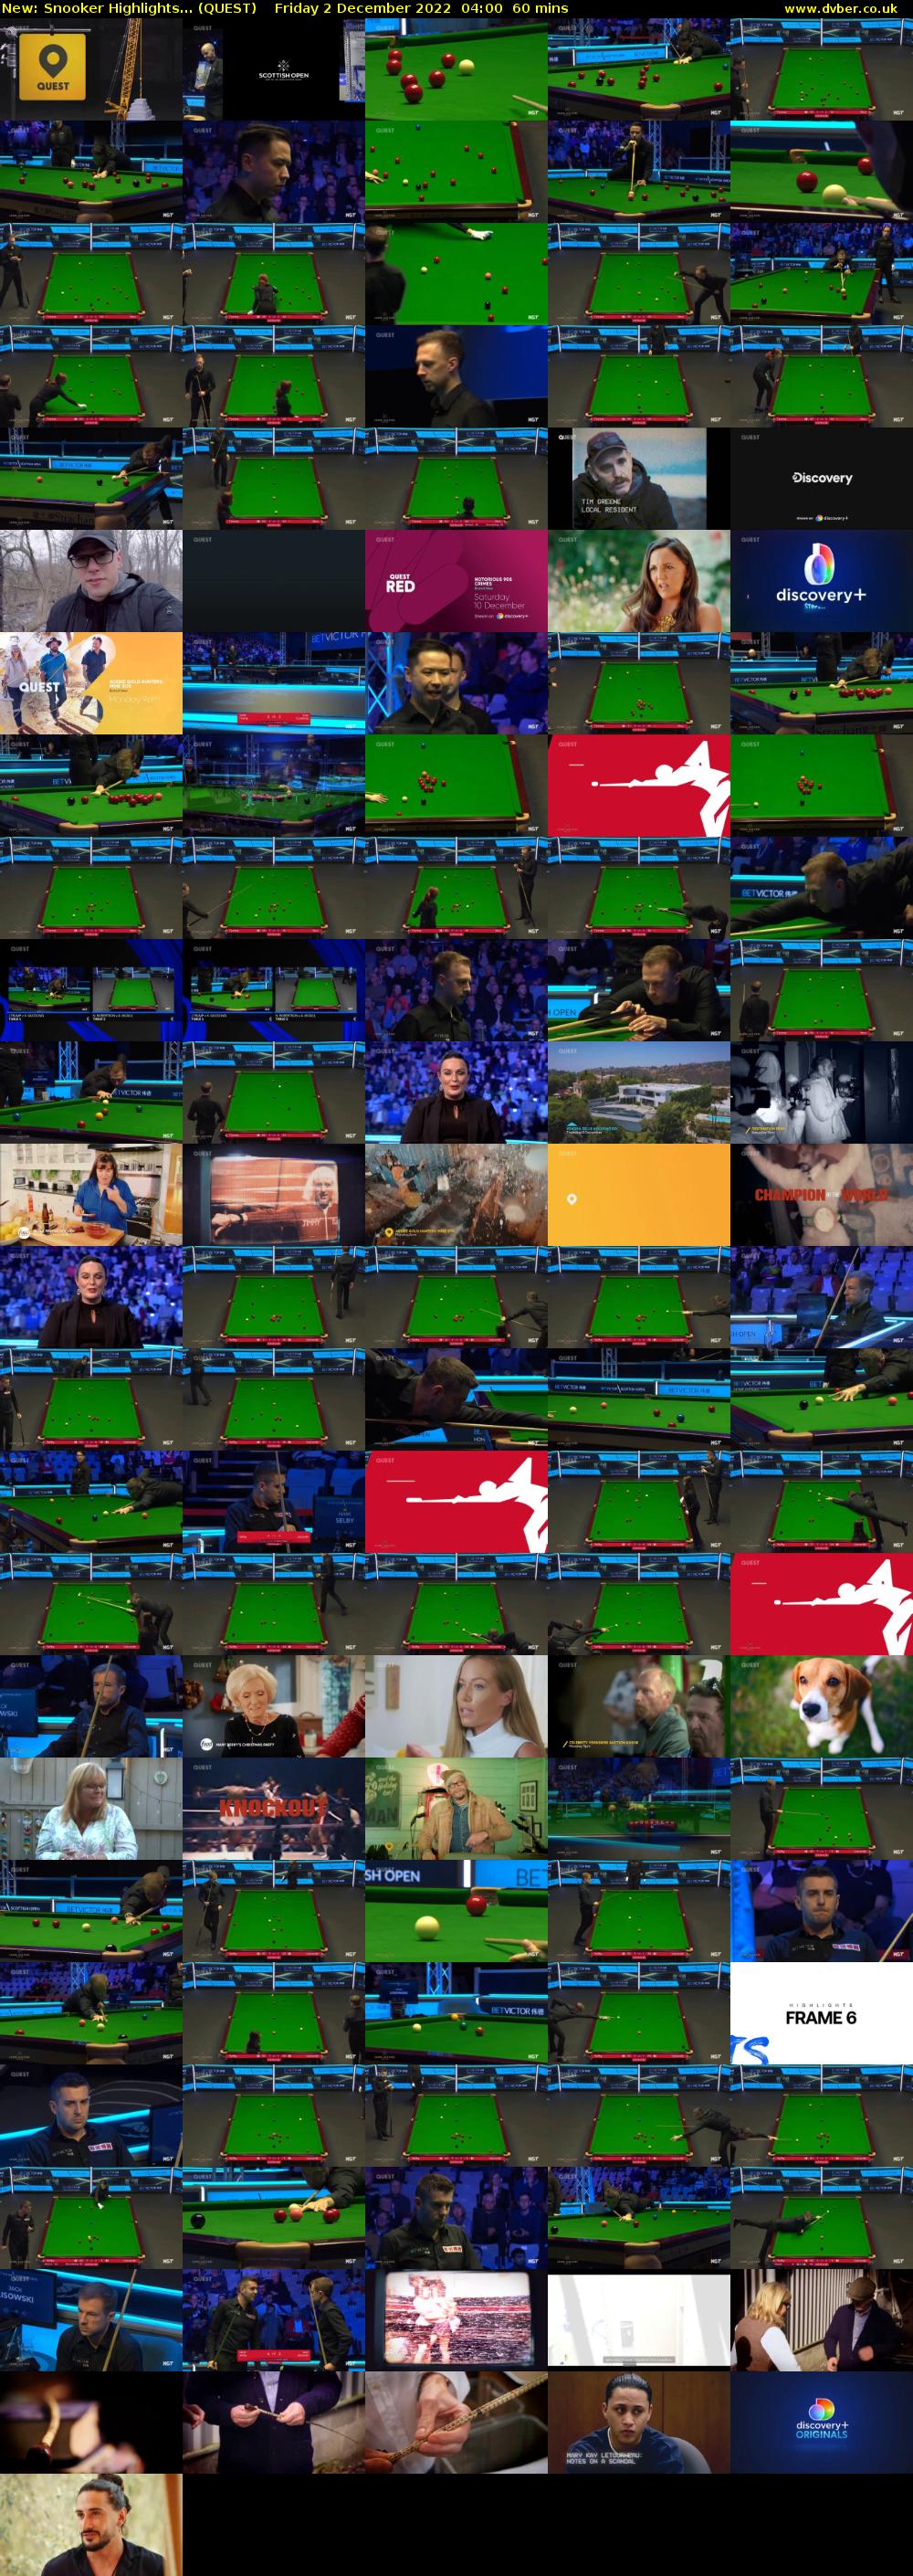 Snooker Highlights... (QUEST) Friday 2 December 2022 04:00 - 05:00